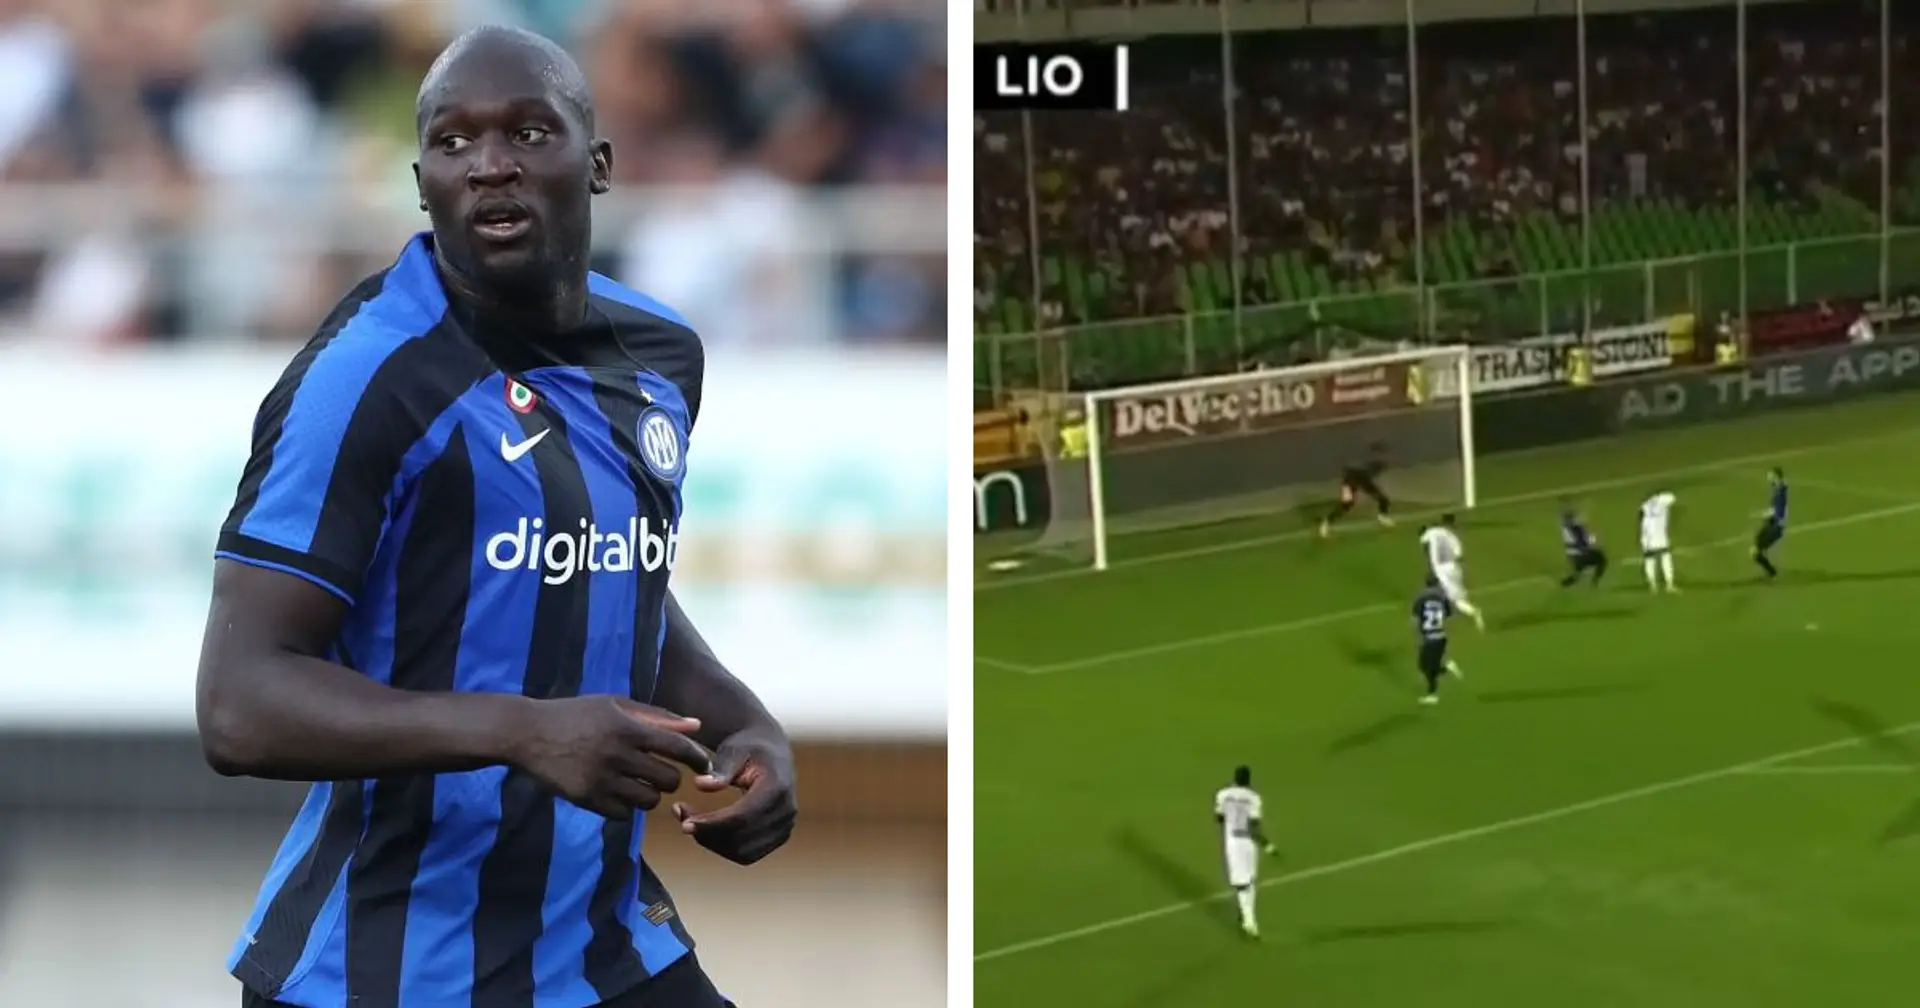 Inter pimpante nei primi 45' contro il Lione: i Nerazzurri dominano in campo ma il Lione è avanti